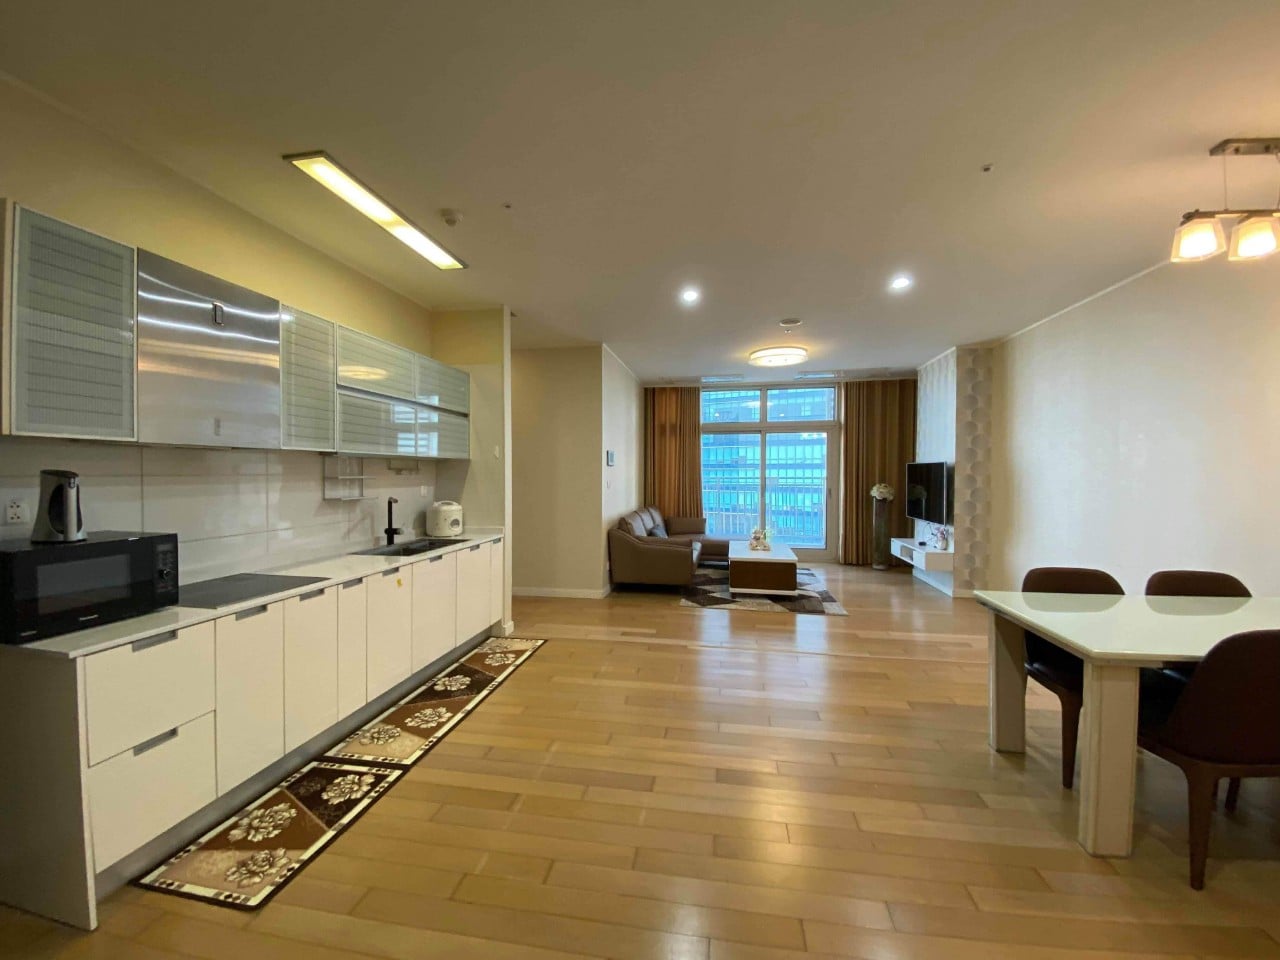 Cho thuê căn hộ 3 phòng ngủ chung cư Keangnam full nội thất cao cấp, vào ở được ngay (ảnh thật) 998638